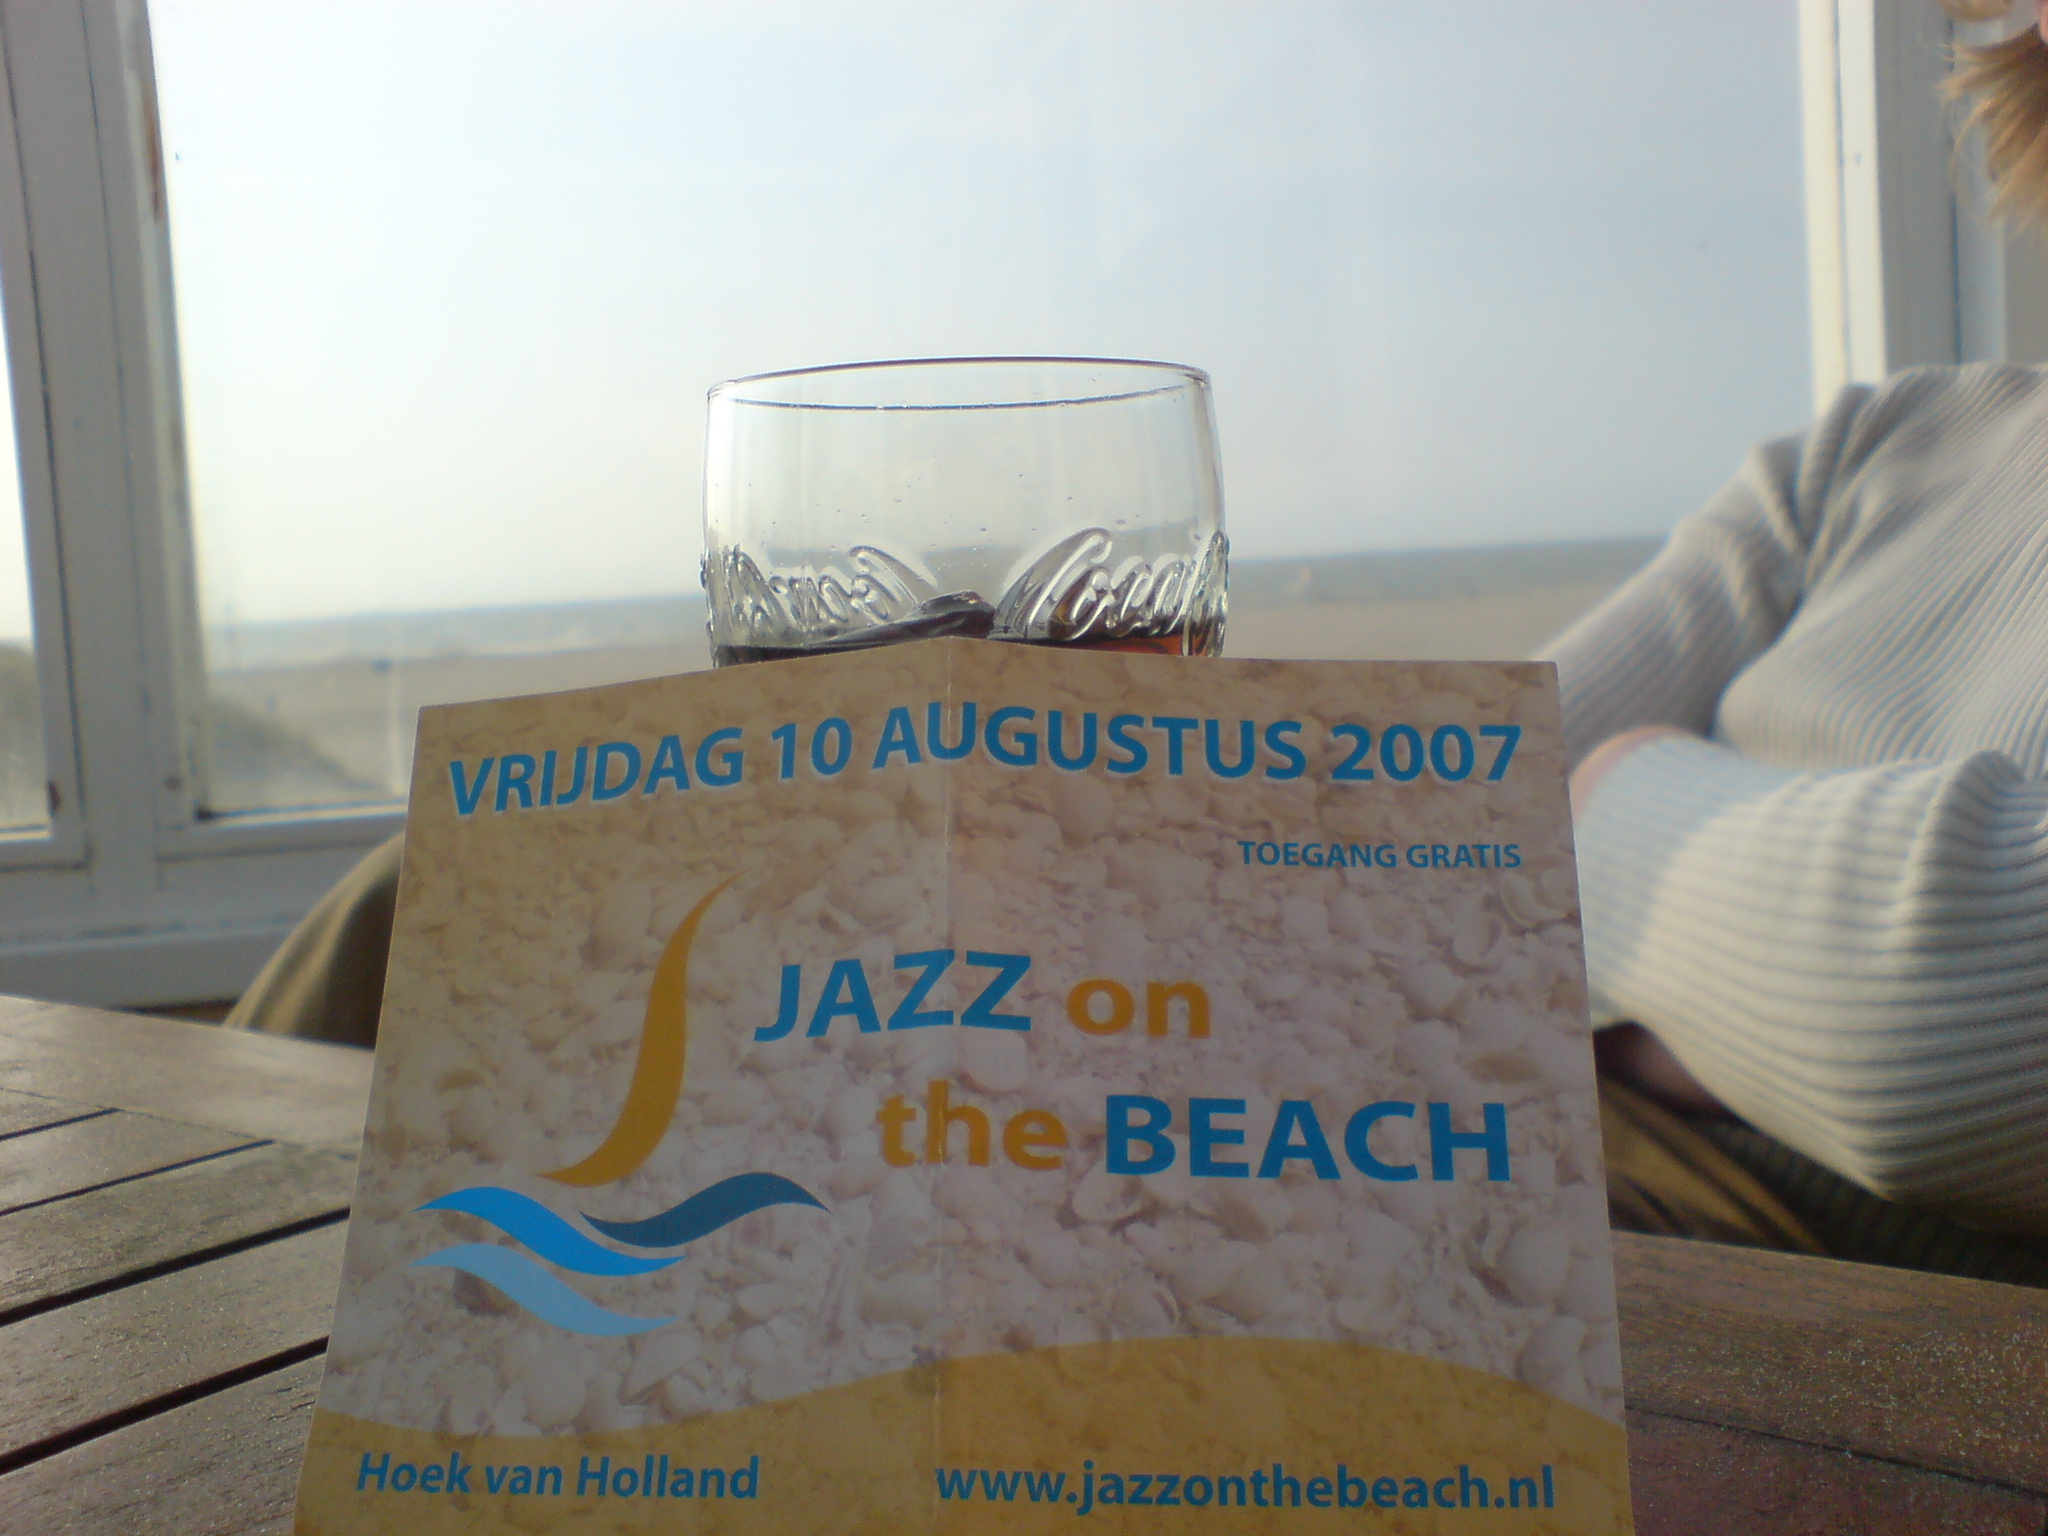 Flyer Jazz on the beach, on the beach